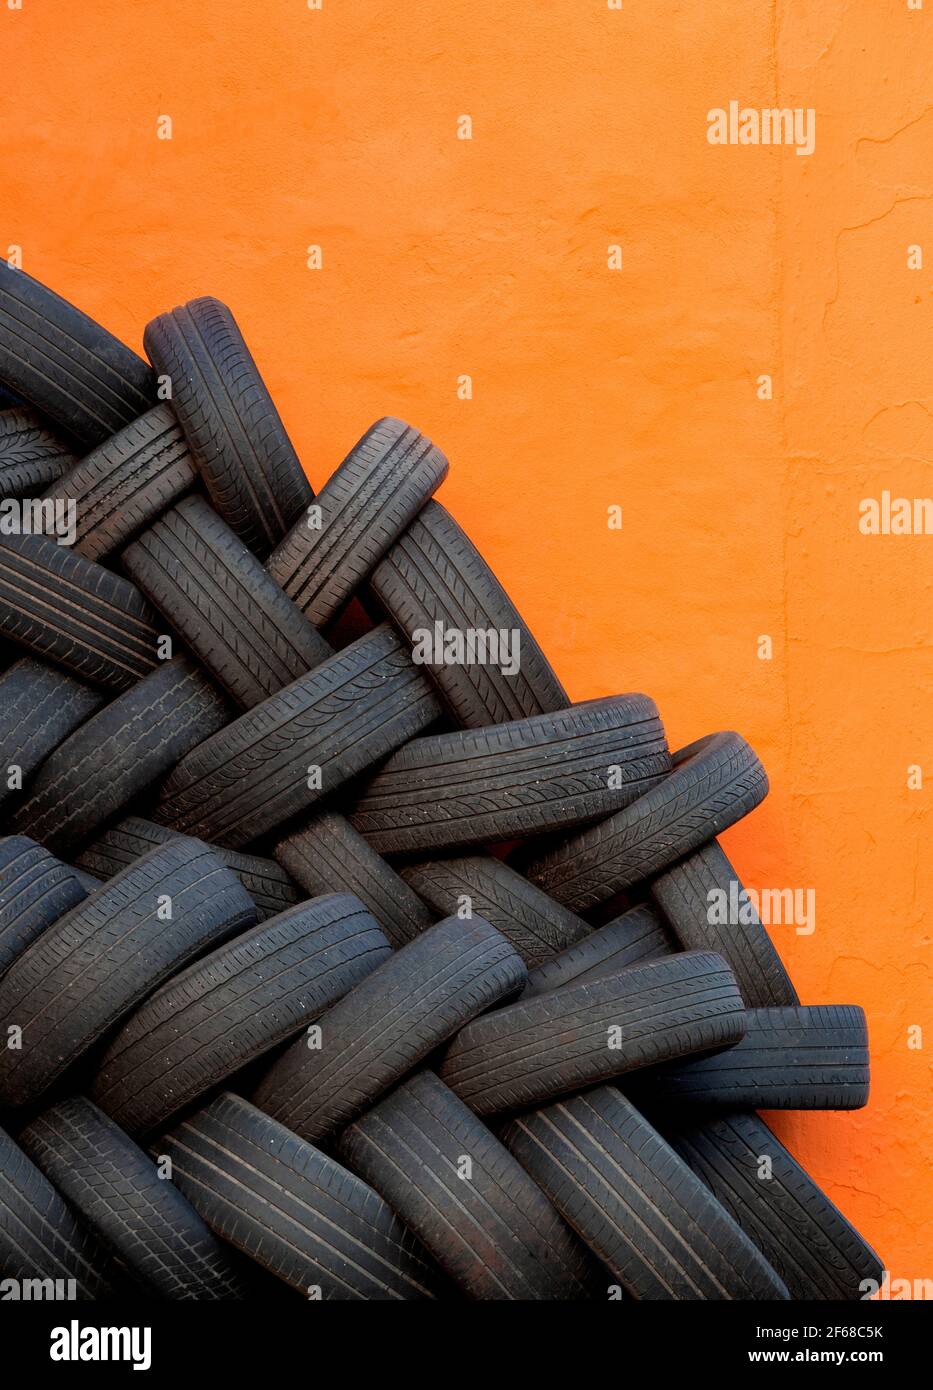 Immagine stradale astratta e colorata di pneumatici per auto usati intrecciati impilati contro una parete di garage in chiaro, dipinto di arancione scuro in attesa di essere riciclata Foto Stock